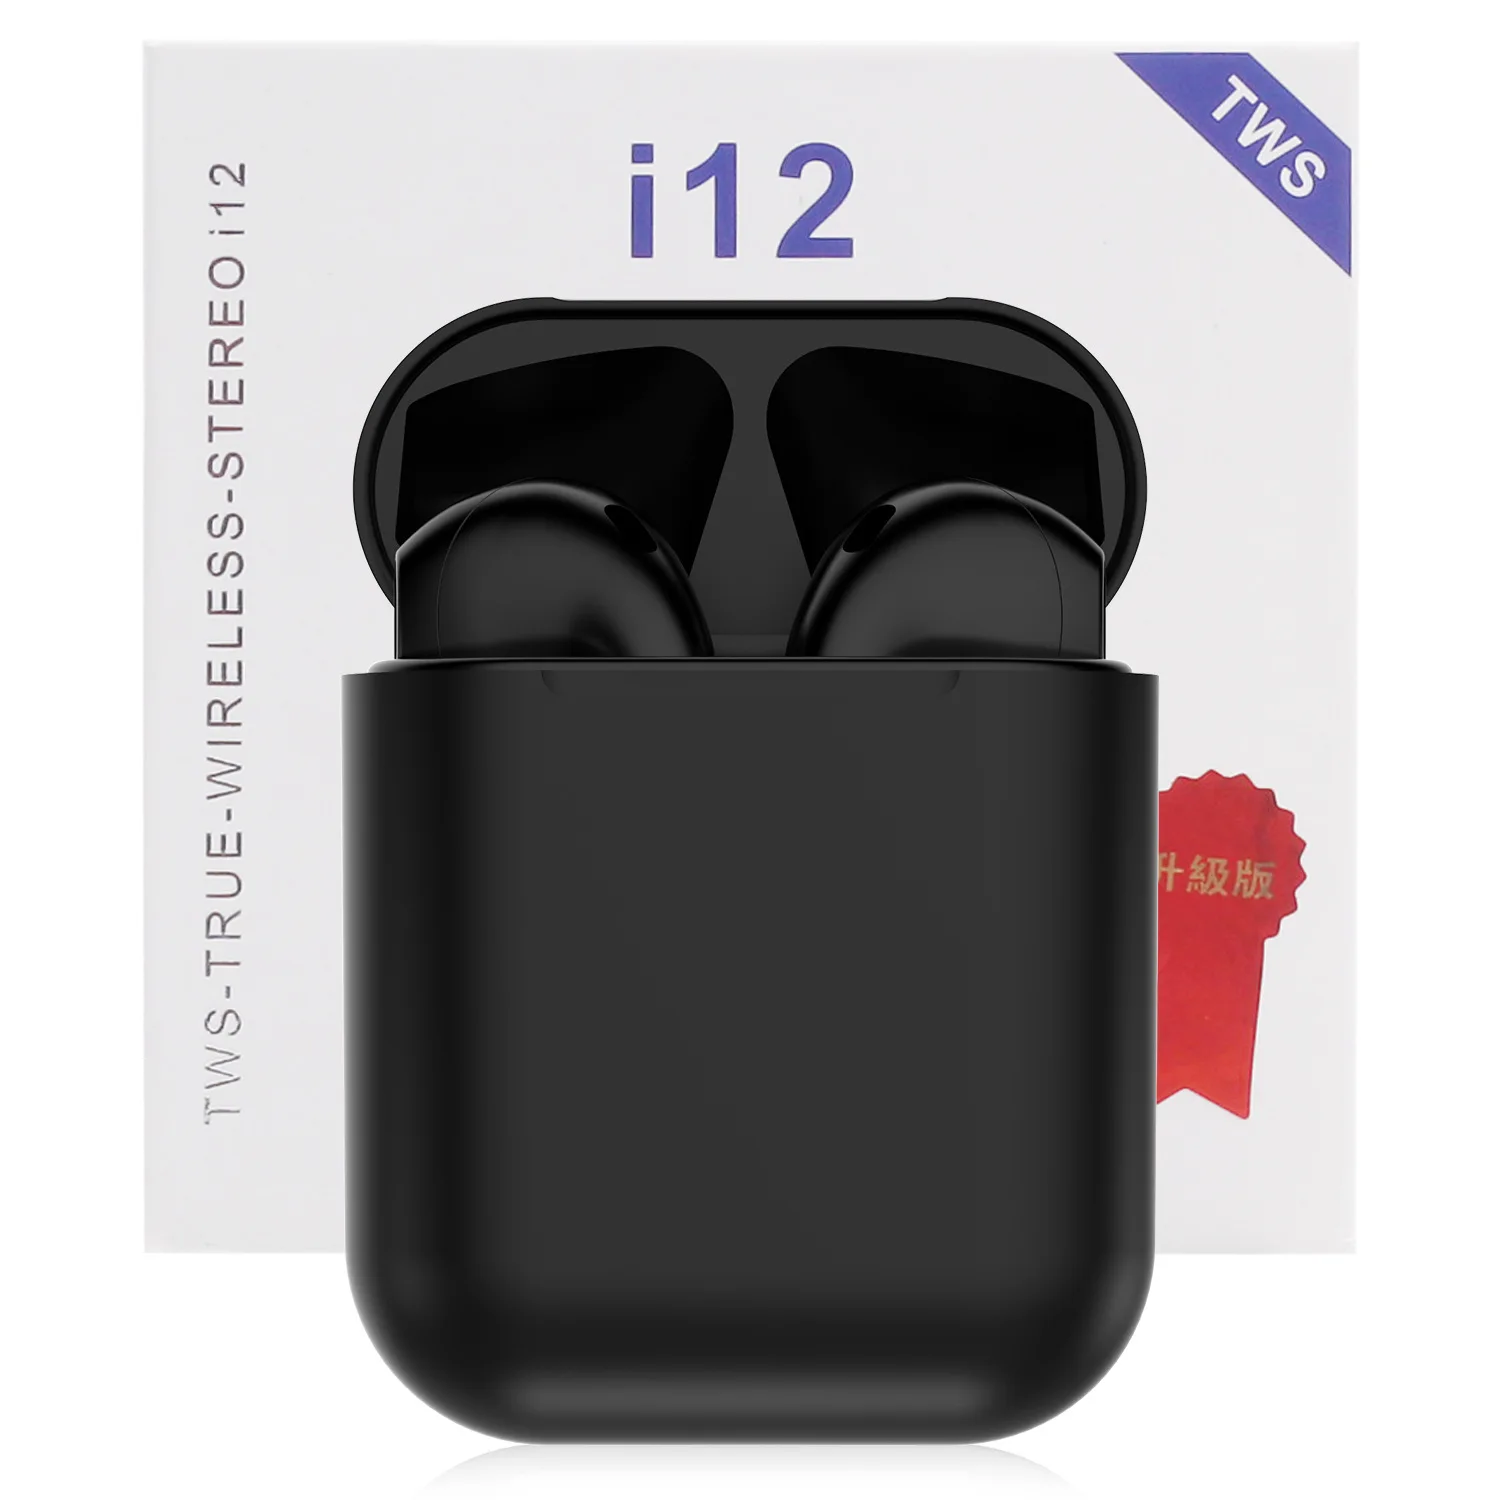 I12 TWS беспроводные наушники Bluetooth 5,0 гарнитура сенсорное управление мини наушники для смартфона pk i11 i14 i60 i30